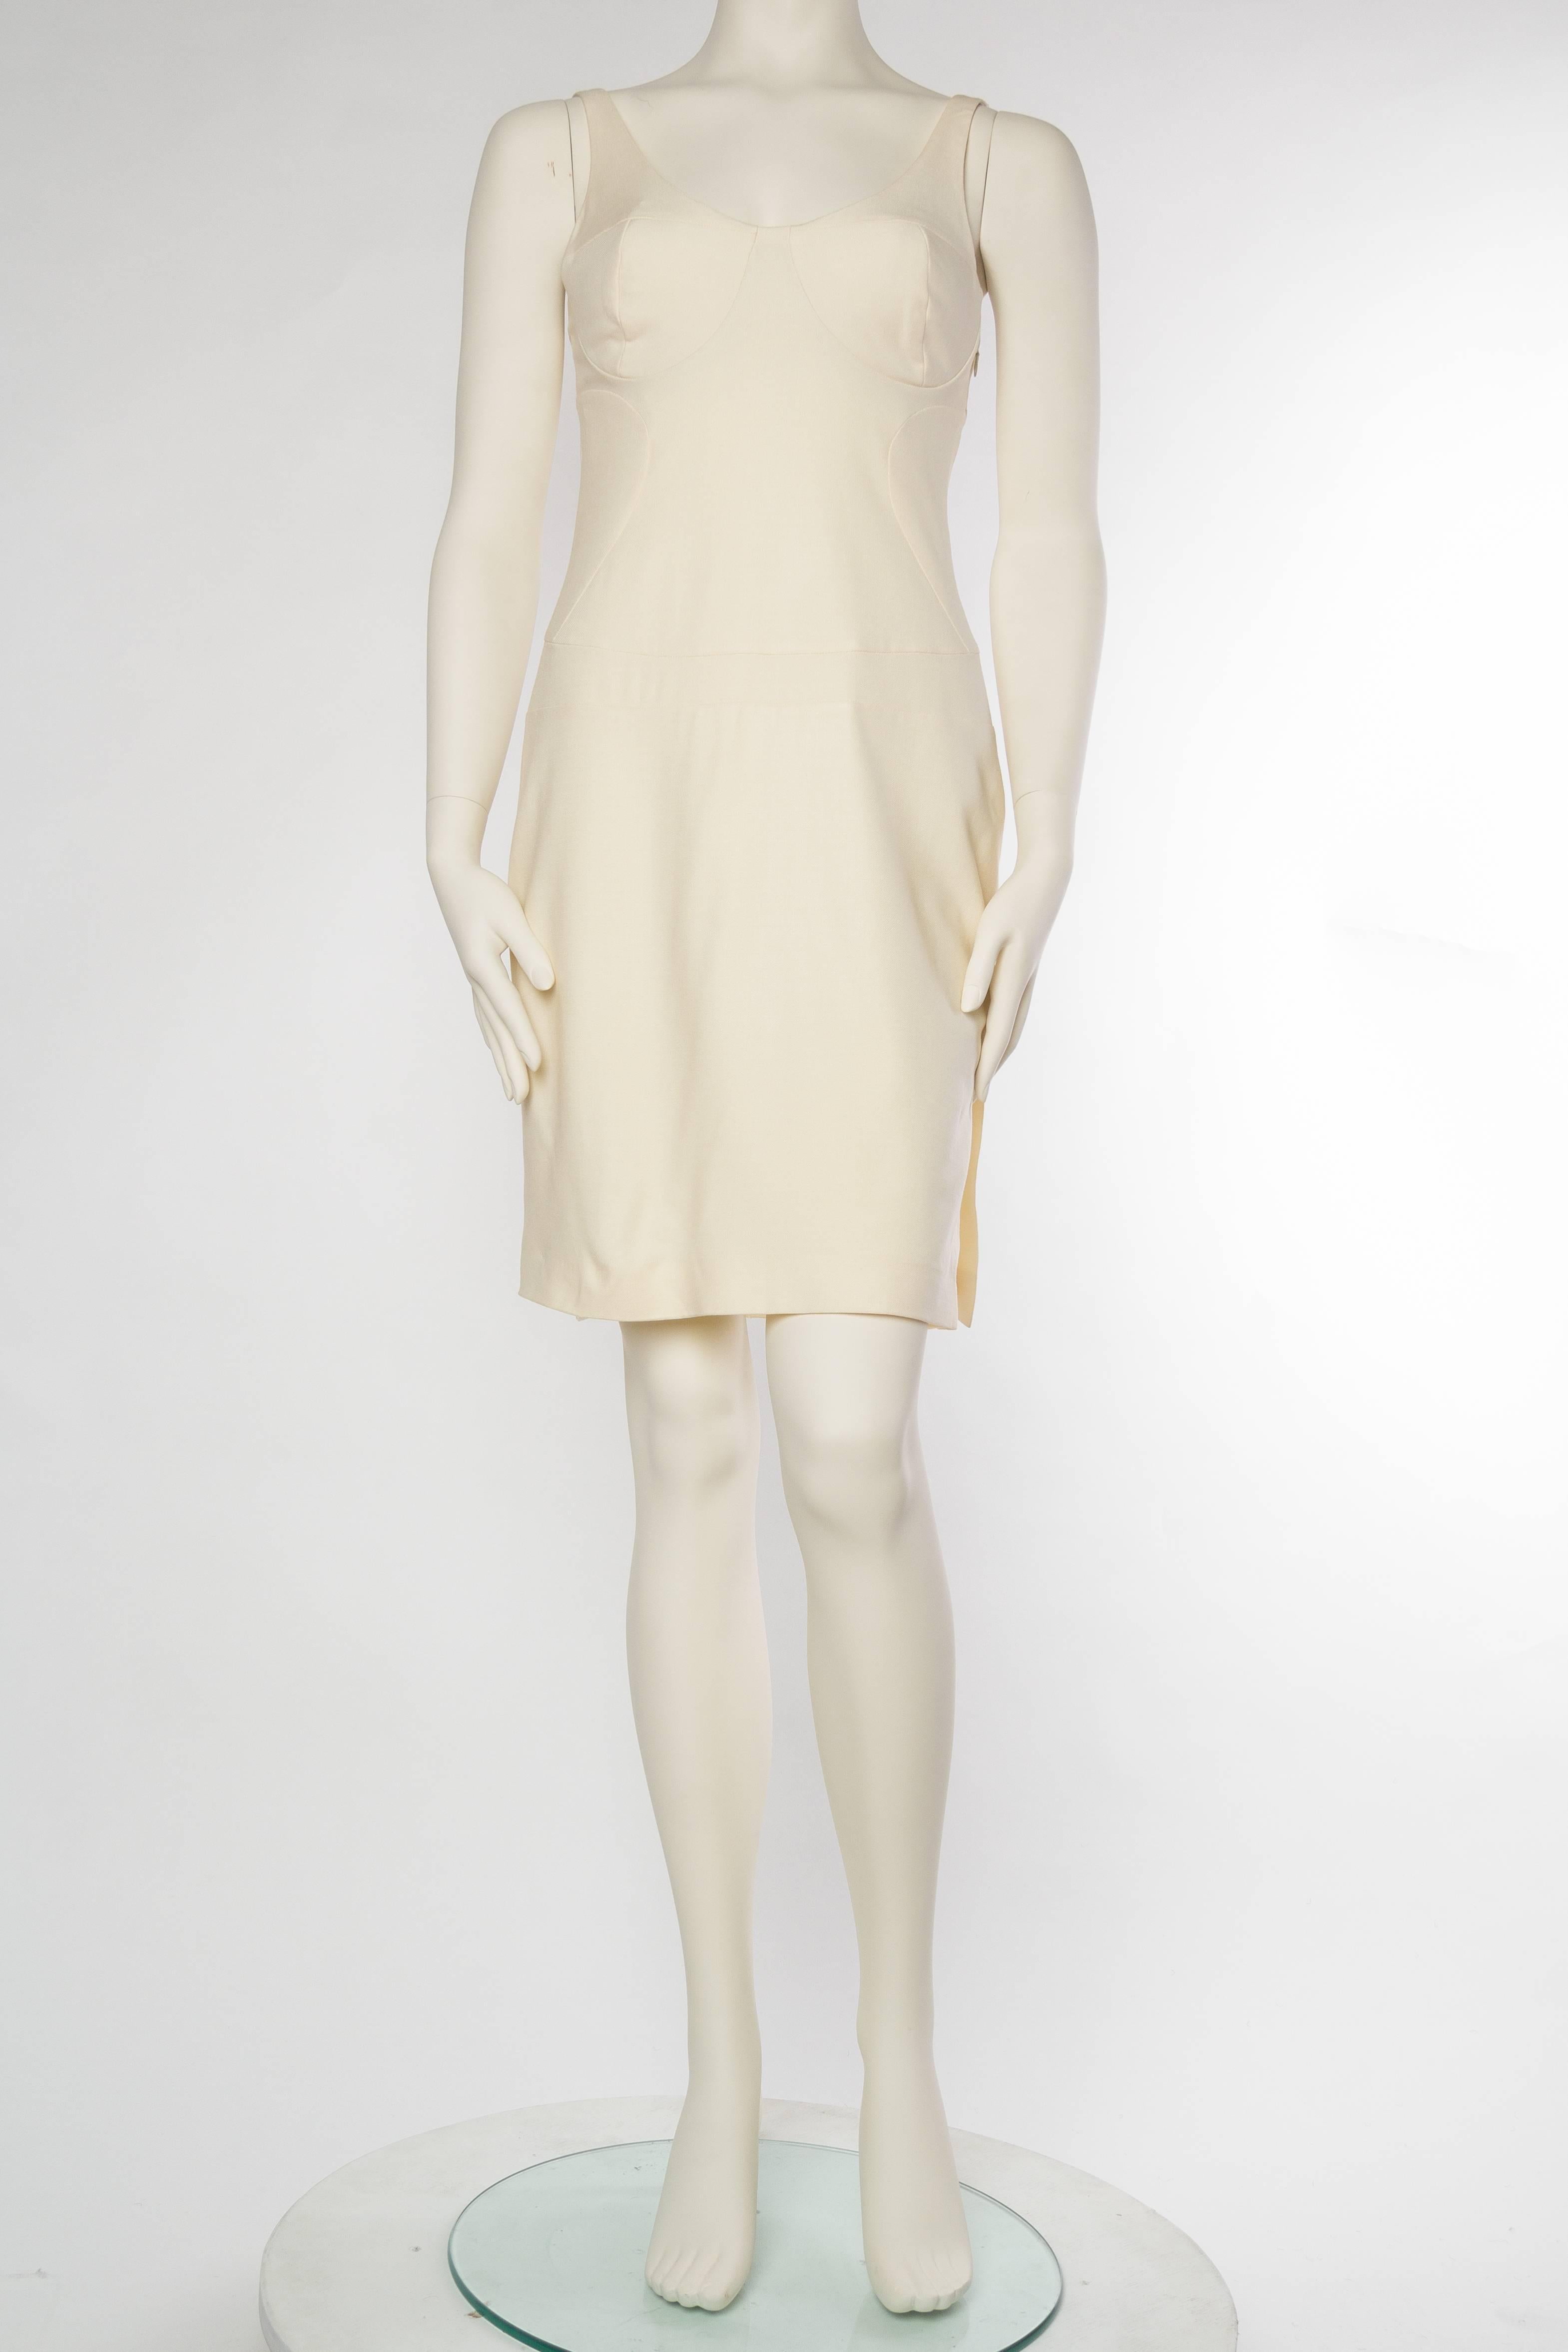 Beige Gianni Versace Versus Stretch Cream Underwire Dress with Slit